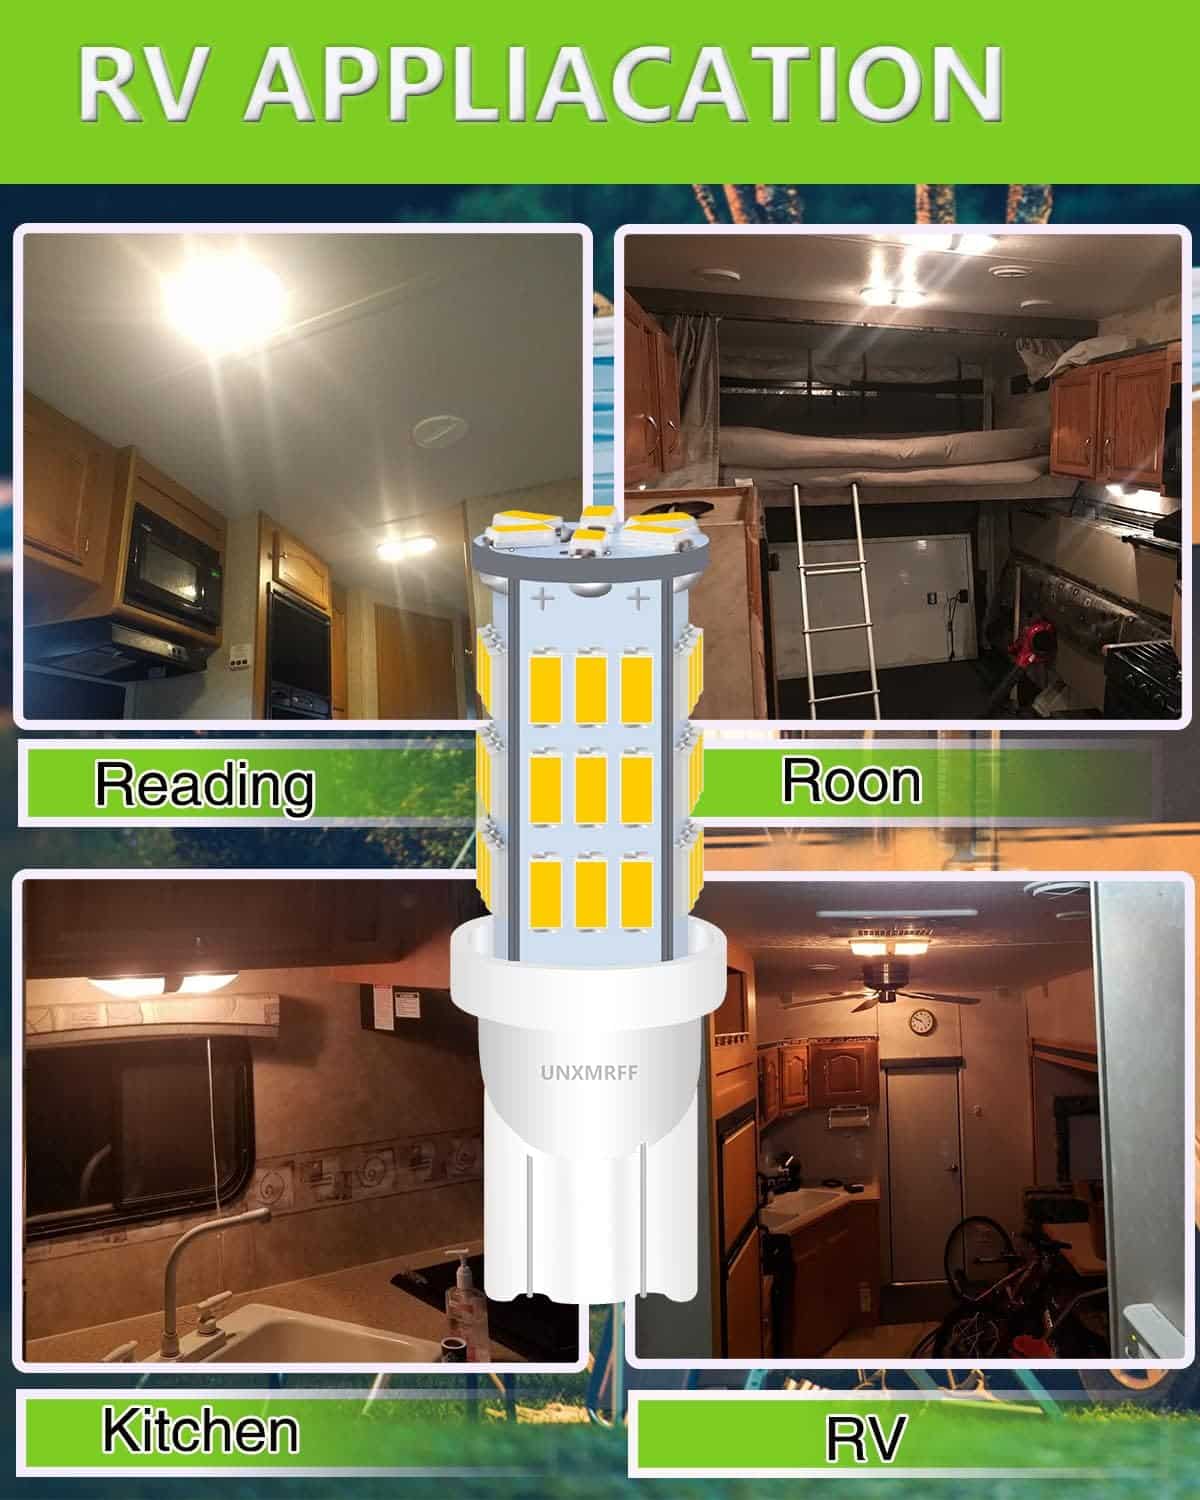 UNXMRFF - Super Bright 194 LED Light Bulbs White, T10 912 921 168 LED Camper Lights Bulb for 12V RV Ceiling Dome Light/RV Interior Lighting/Travel Trailer/Boat/RV Camper Light Bulb (Pack of 12)